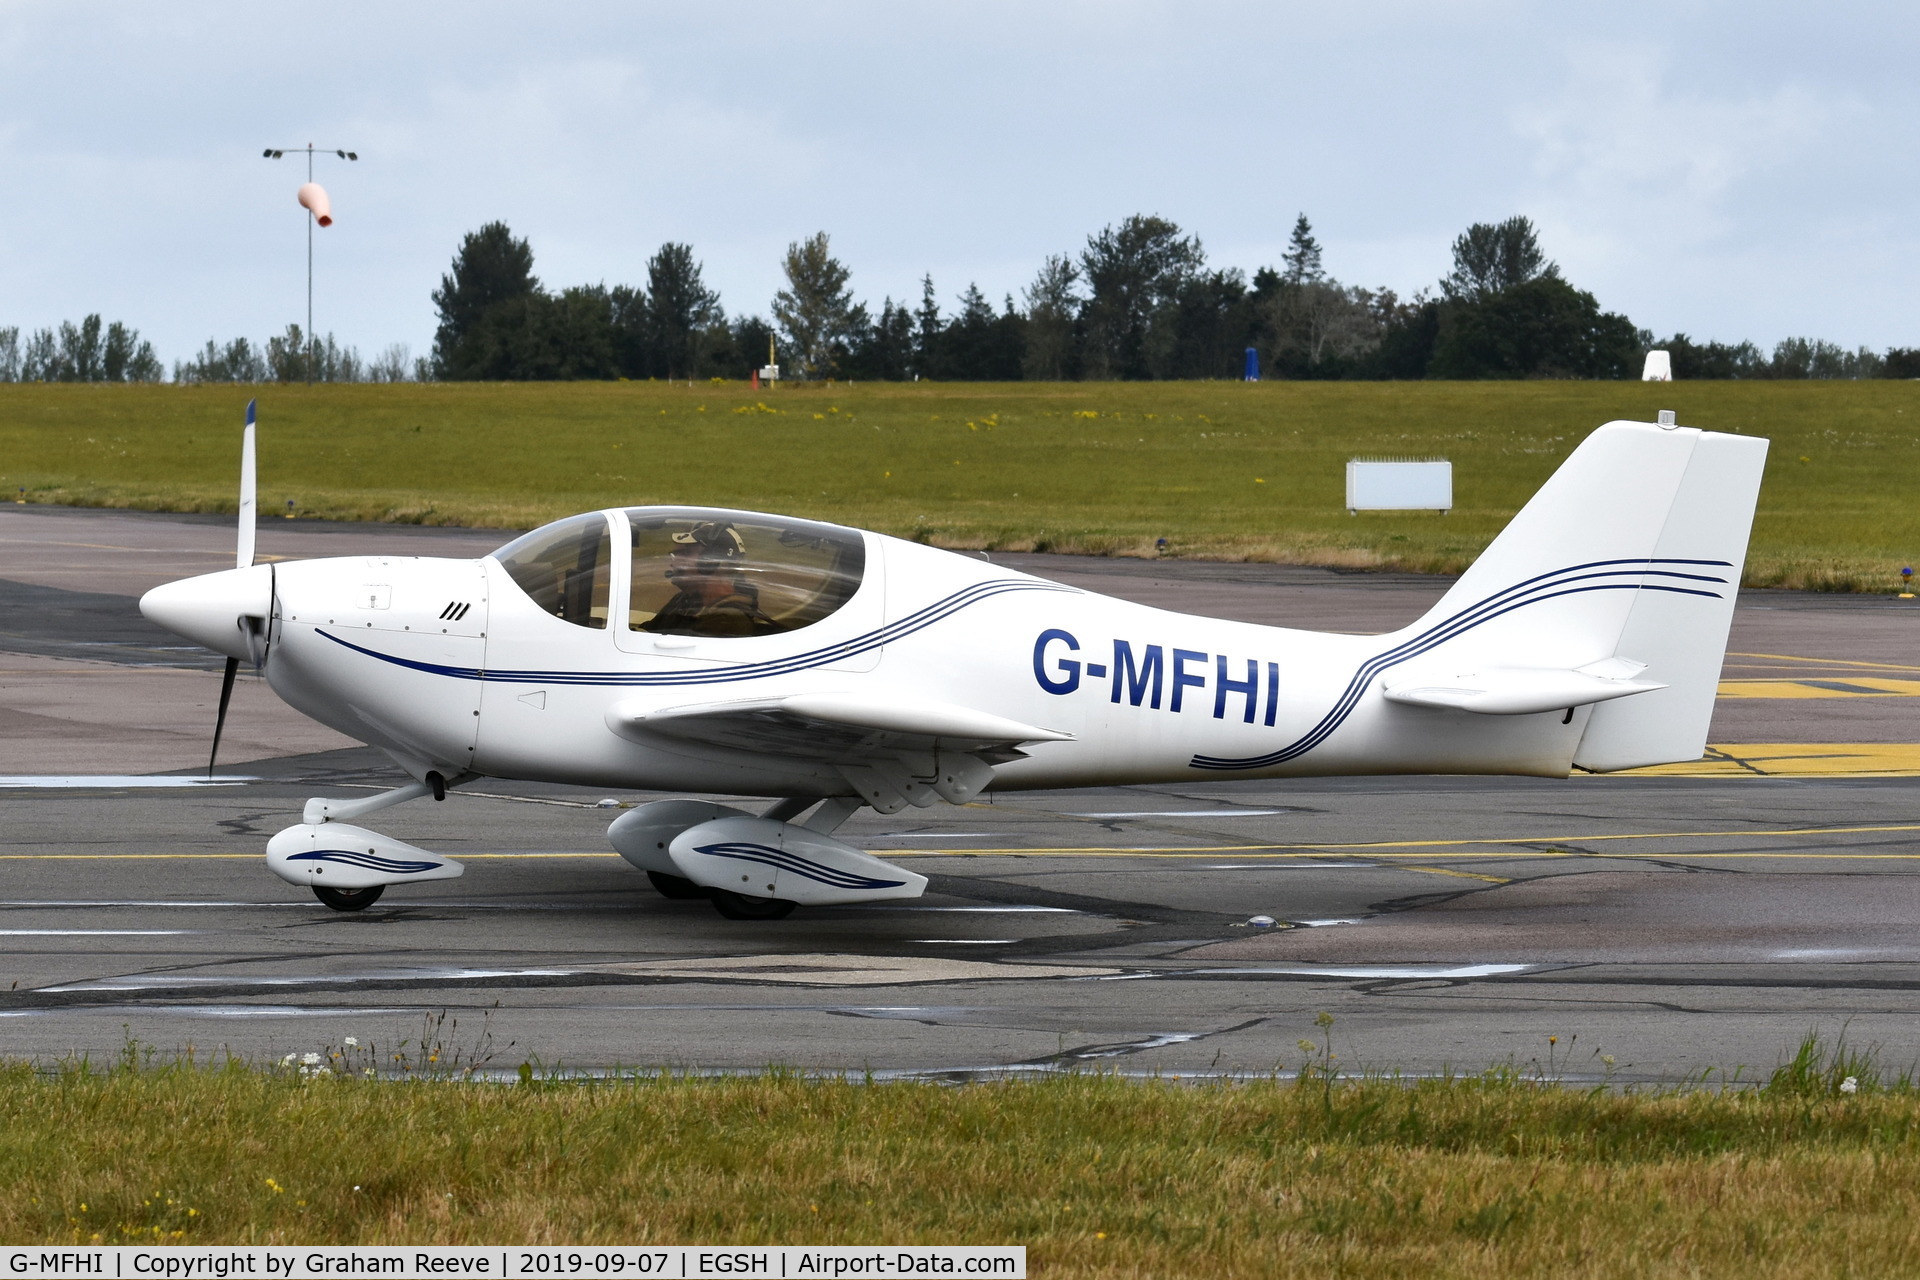 G-MFHI, 1998 Europa Tri-Gear C/N PFA 247-12841, Just landed at Norwich.